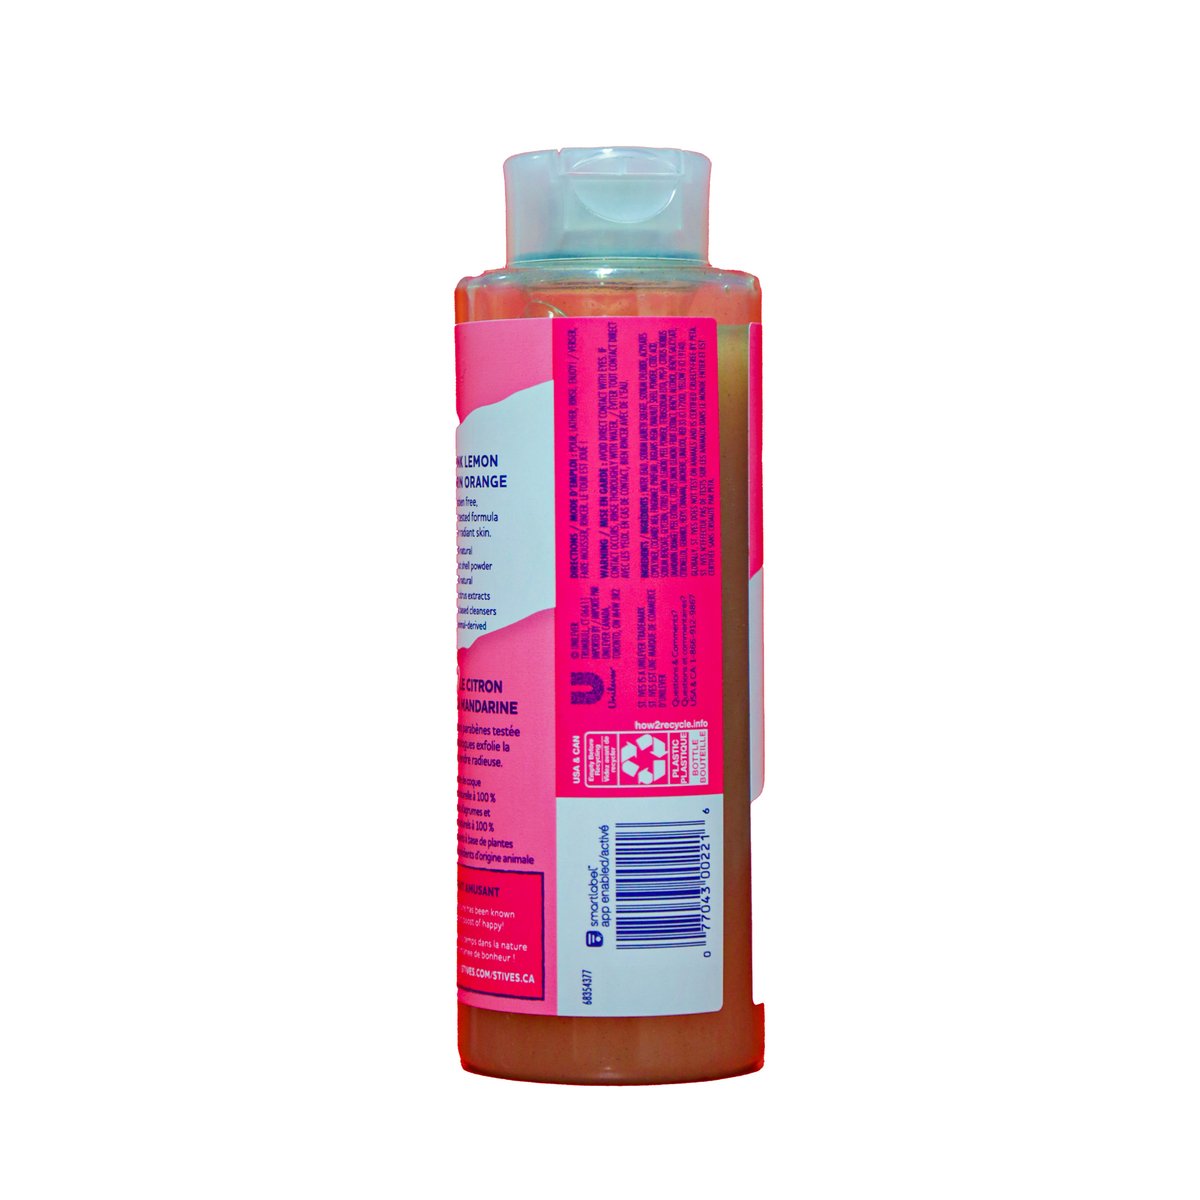 St. Ives Pink Lemon & Mandarin Orange Exfoliating Body Wash 473 ml